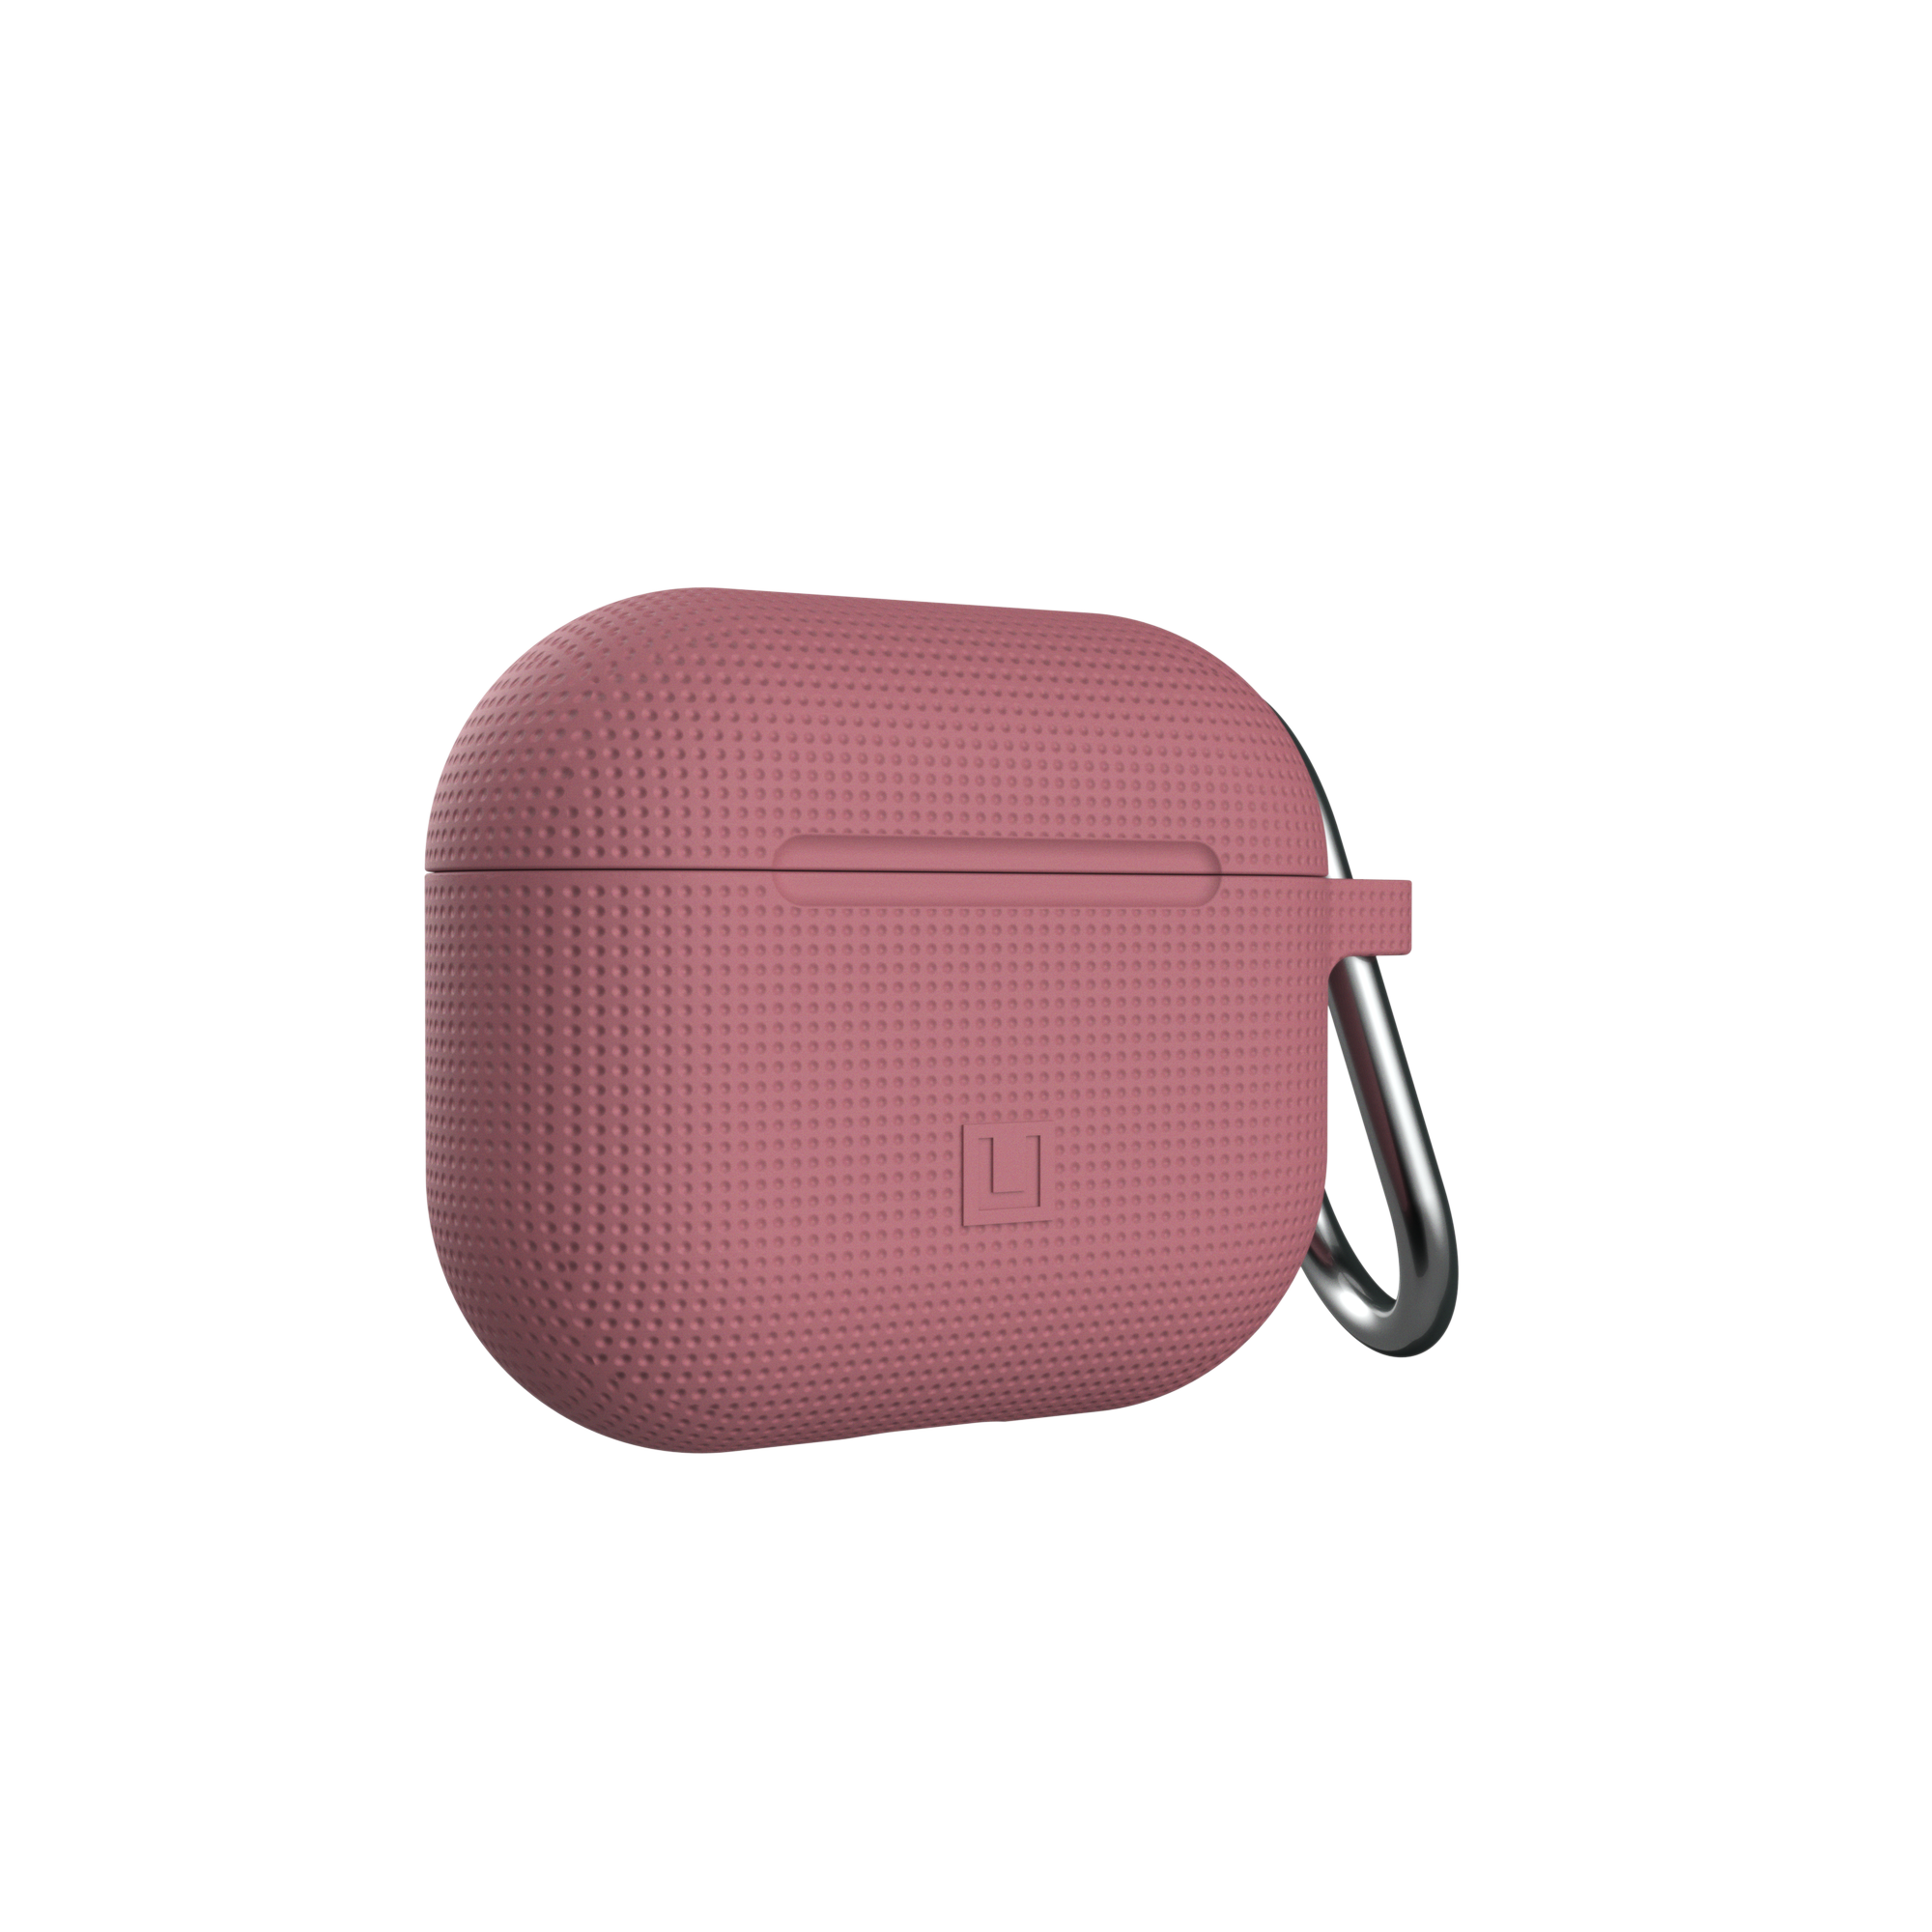 2021), Silikon Cover, URBAN rose Case, Flip UAG GEAR by ARMOR AirPods dusty Dot U (3. Apple, Generation [U]